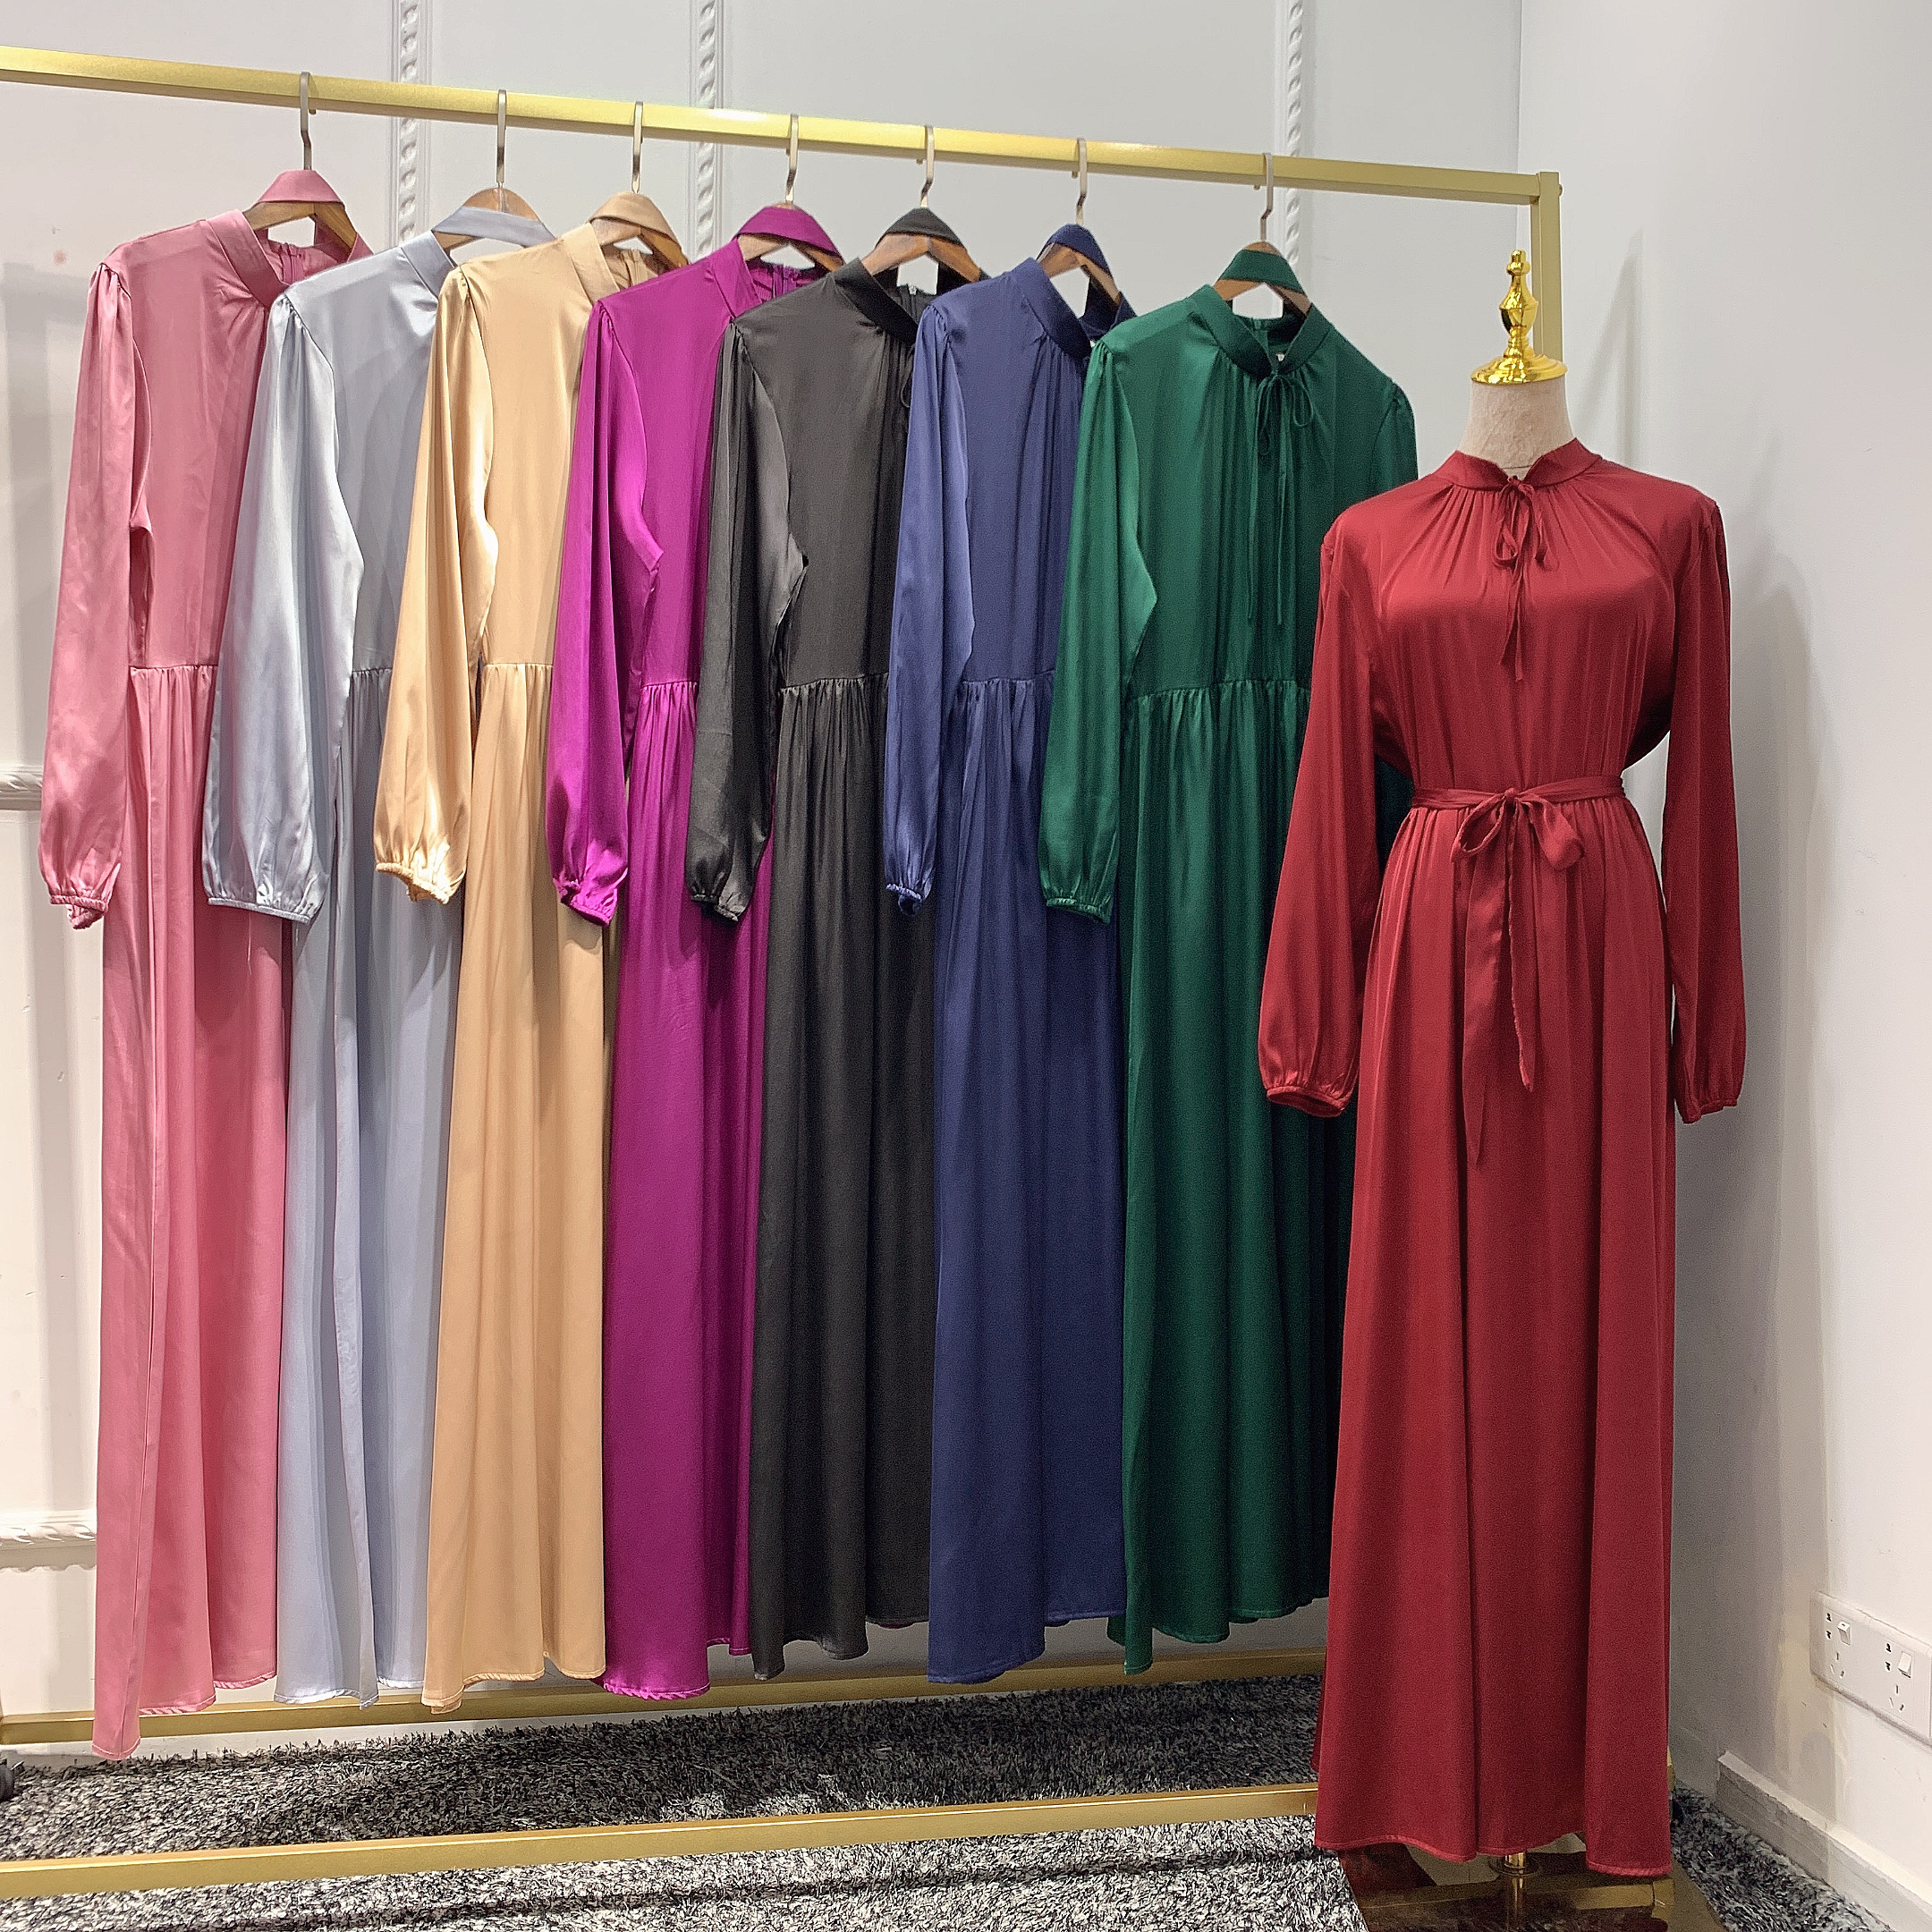 2021 New Modest fashion satin Abaya Muslim women dress in Dubai Islamic Clothing